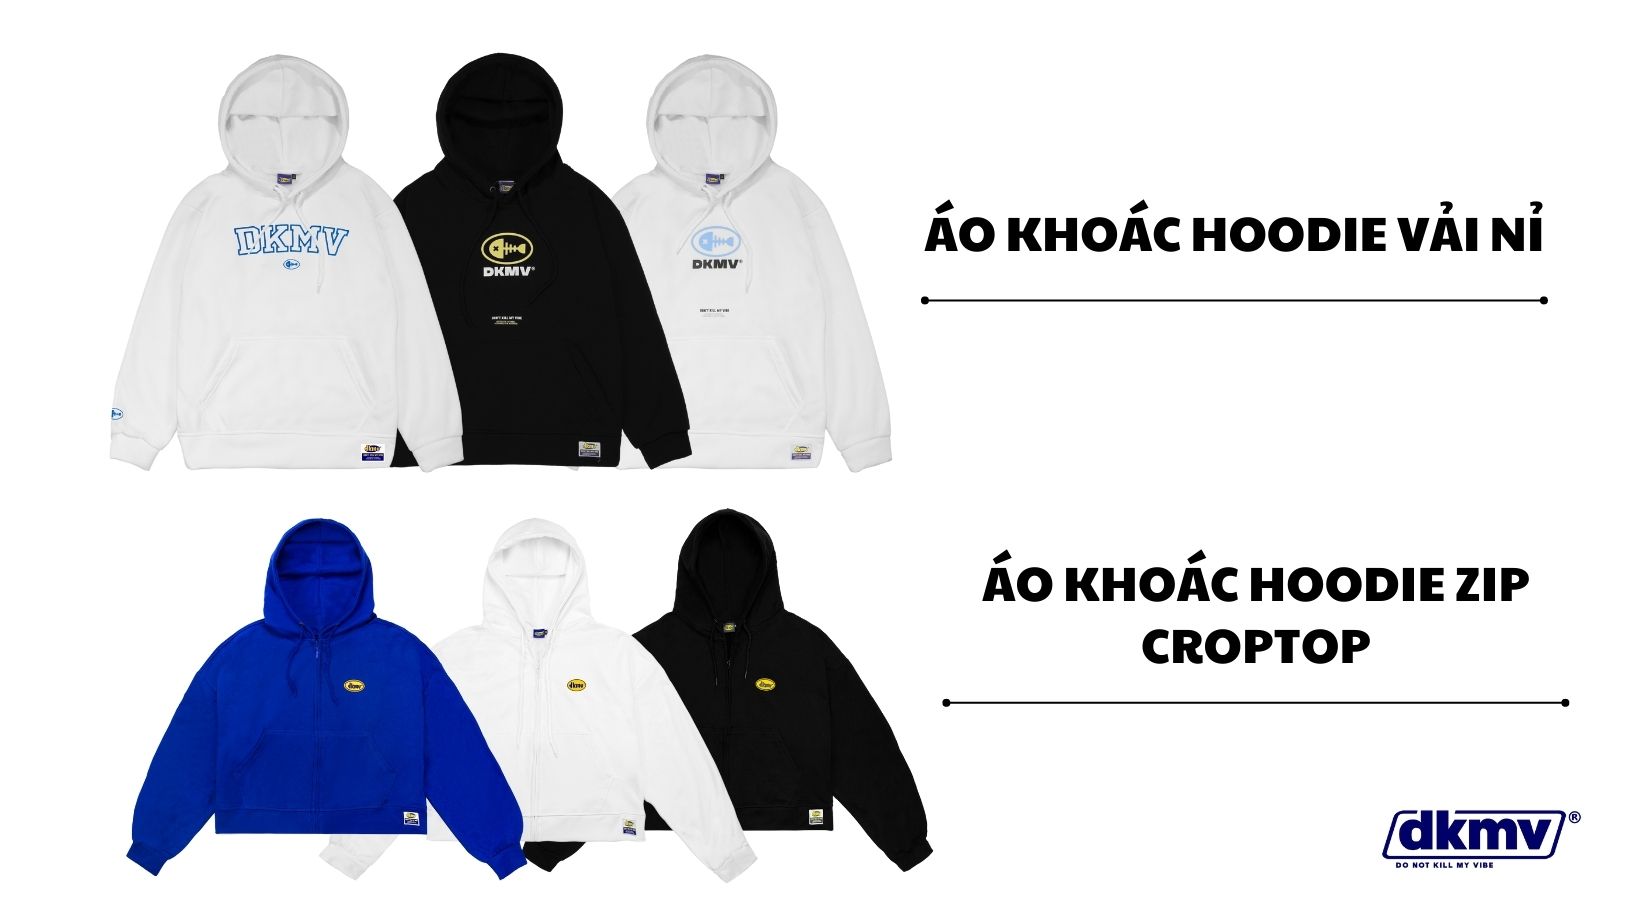 áo khoác hoodie local brand dkmv